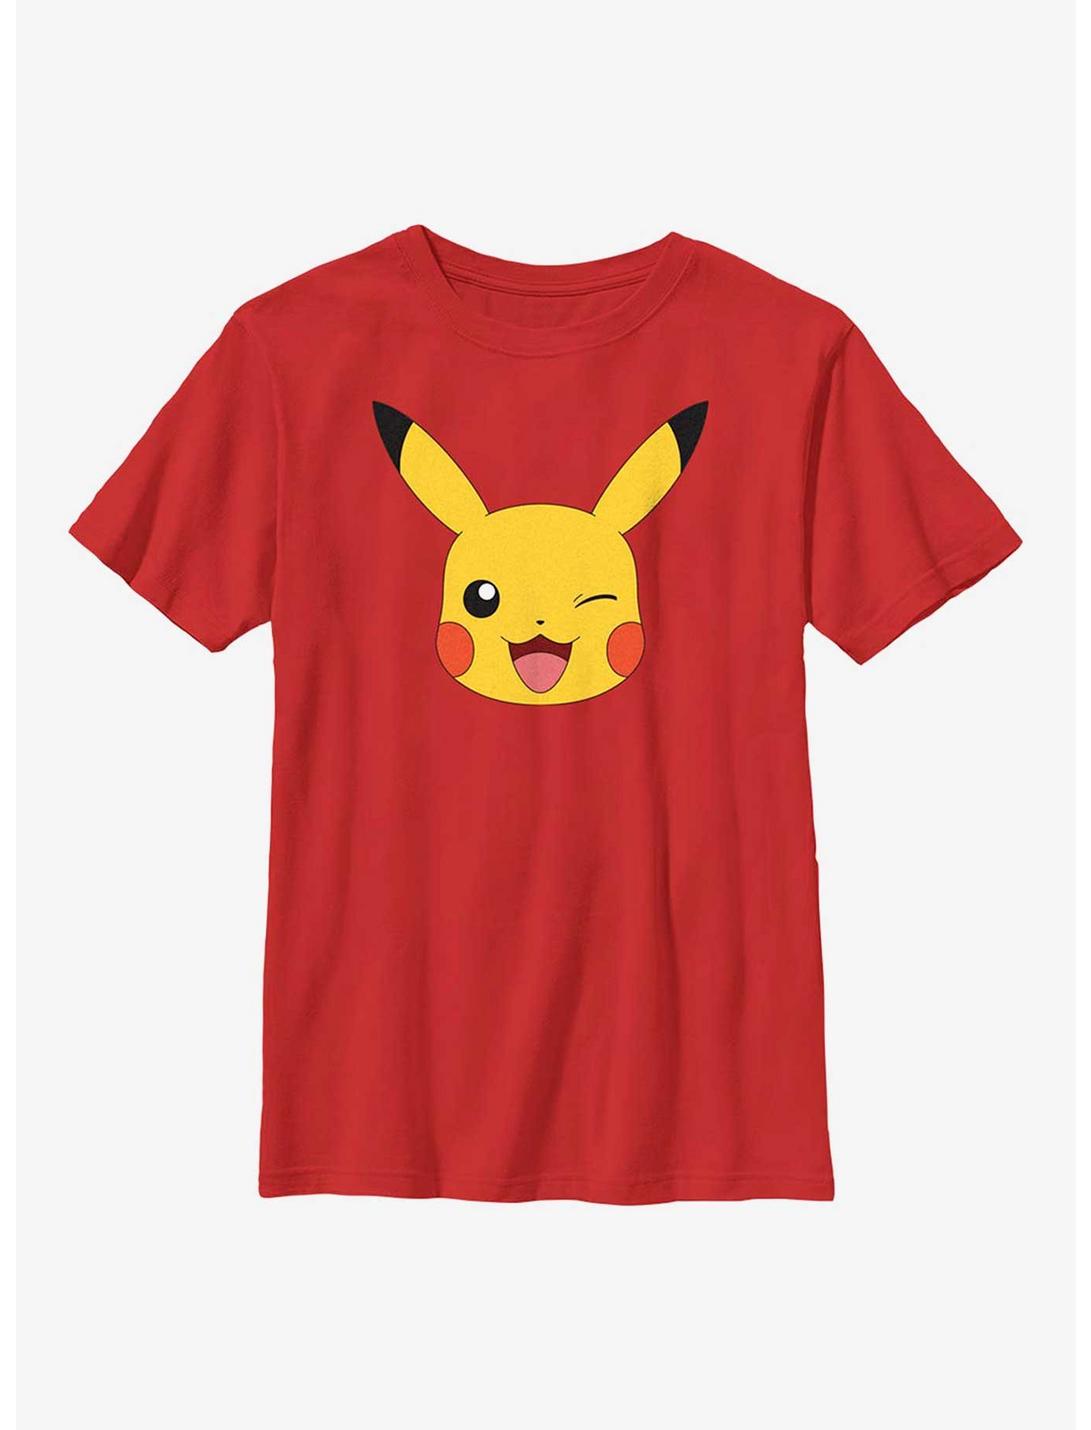 Pokémon Pikachu Big Face Youth T-Shirt, RED, hi-res